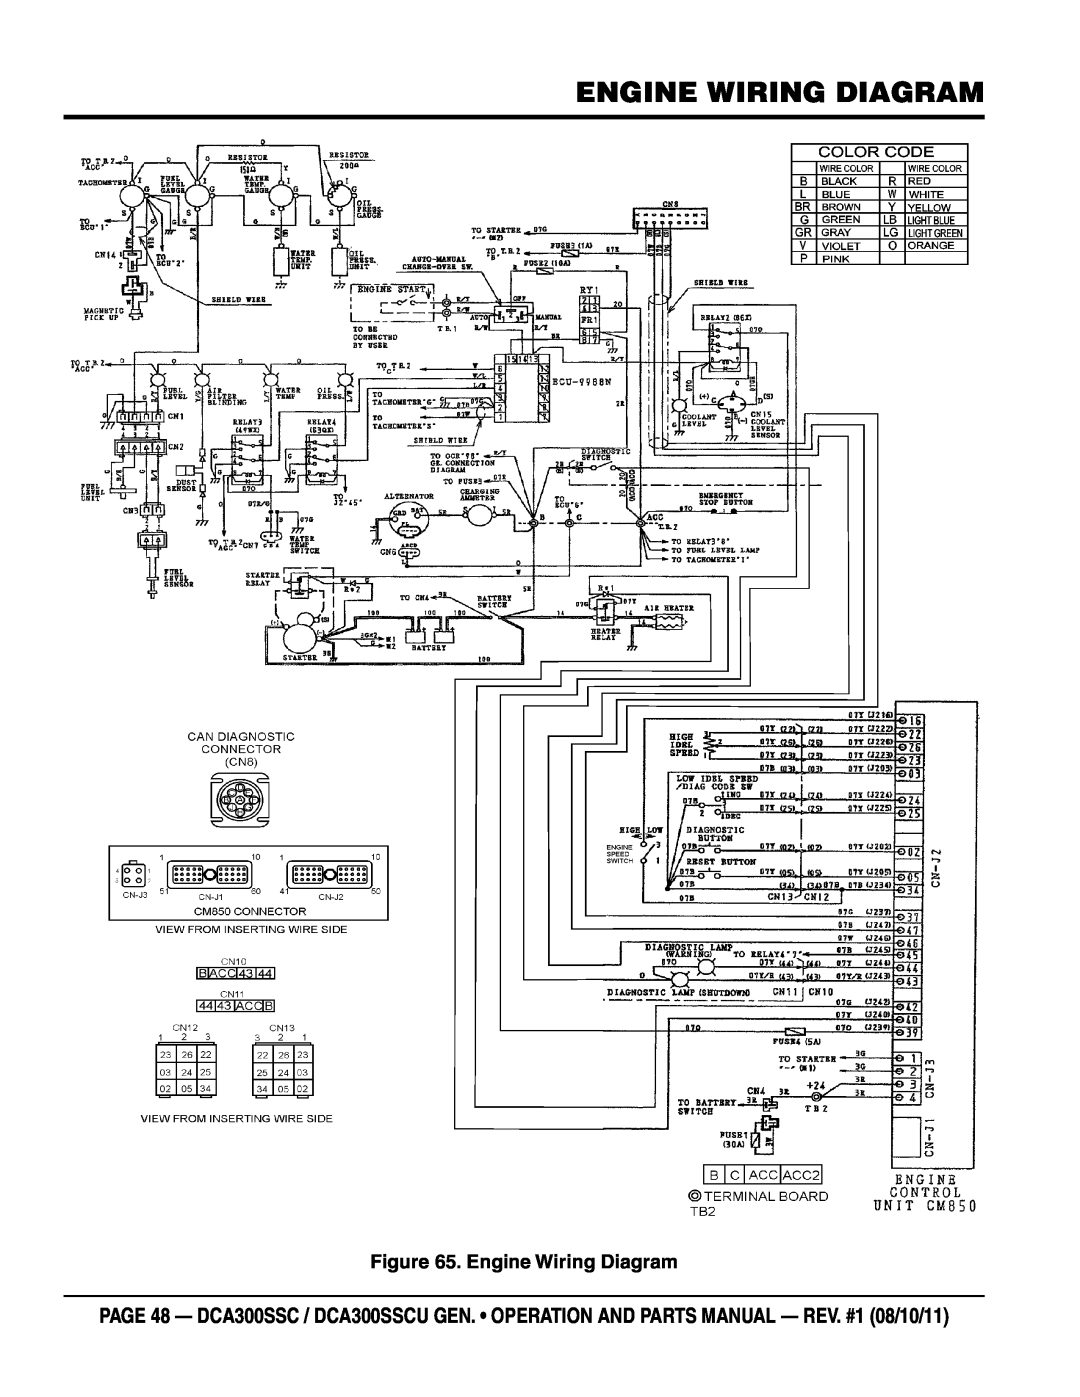 Multiquip DCA300SSCU manual Engine Wiring Diagram 